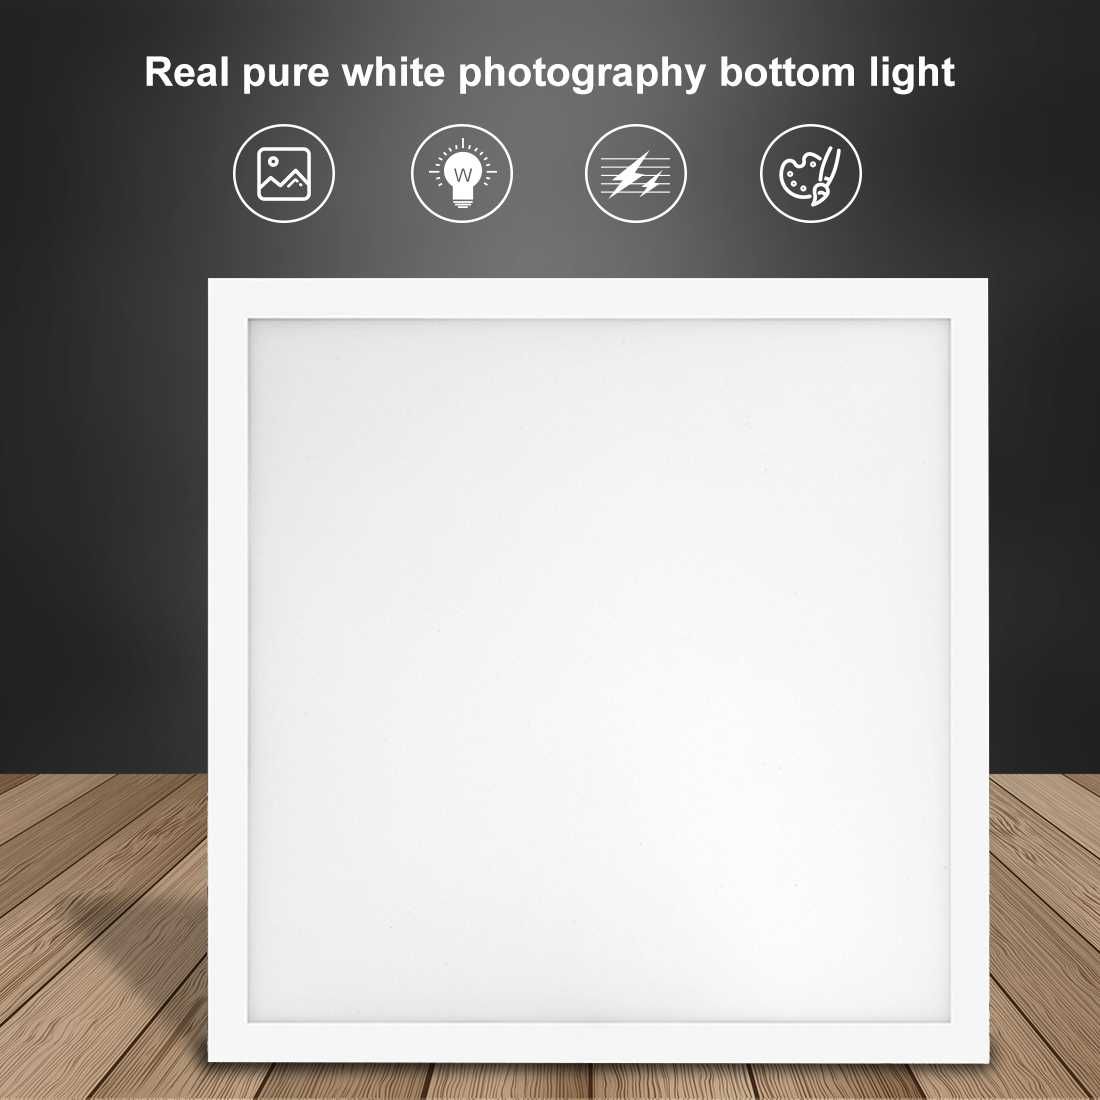 Фотографски светлинен панел без сенки PULUZ, 1200LM, LED, 38х38 см